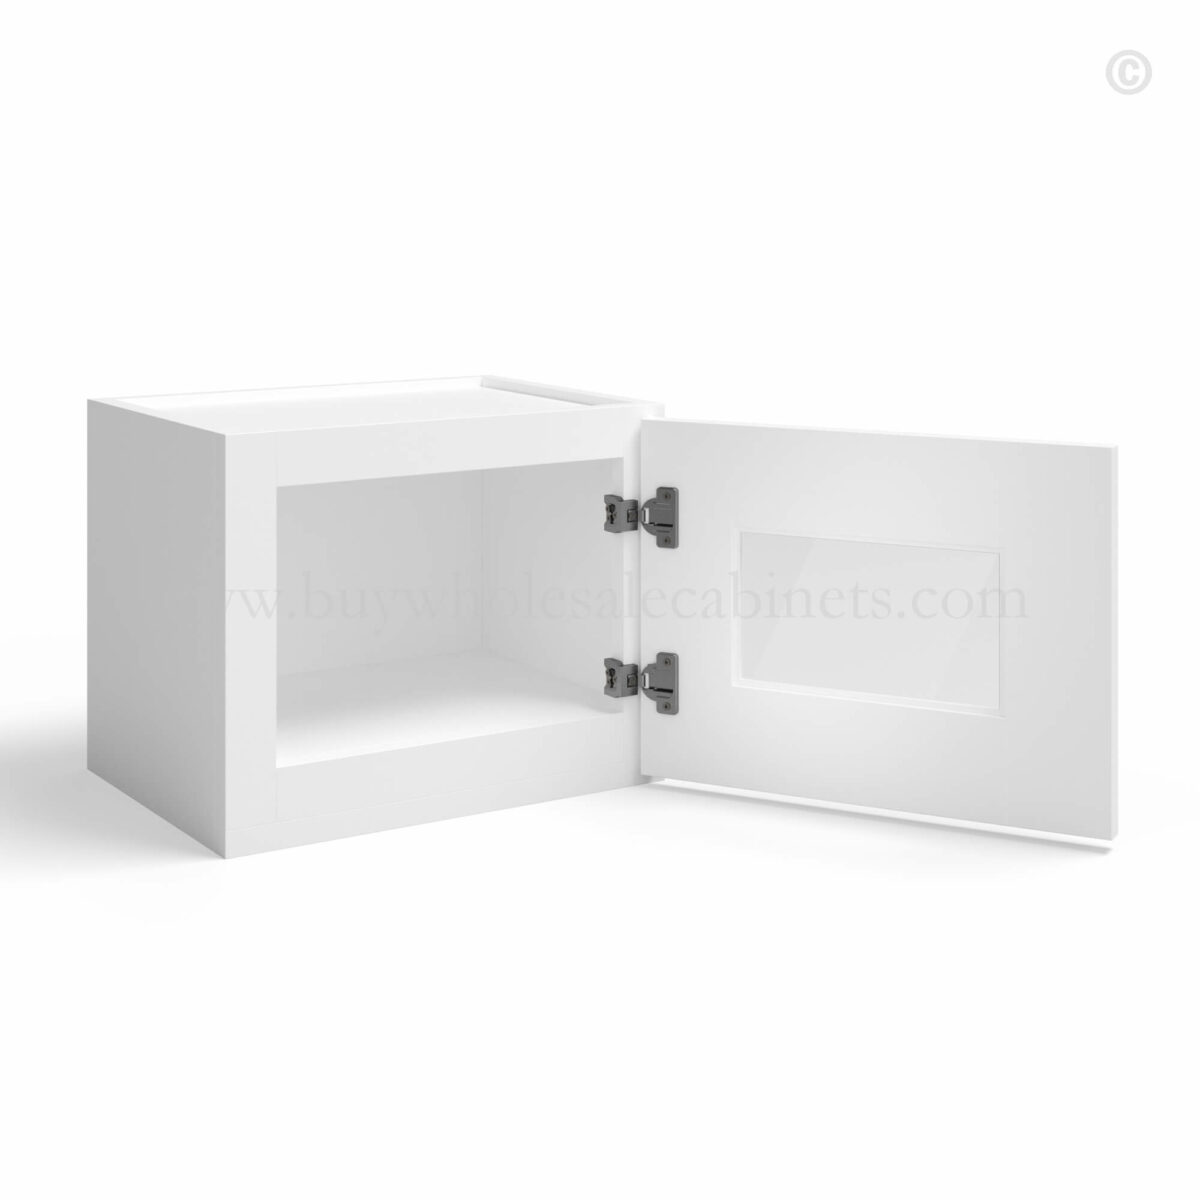 White Shaker 12 H Single Door Wall Cabinet with Glass Door